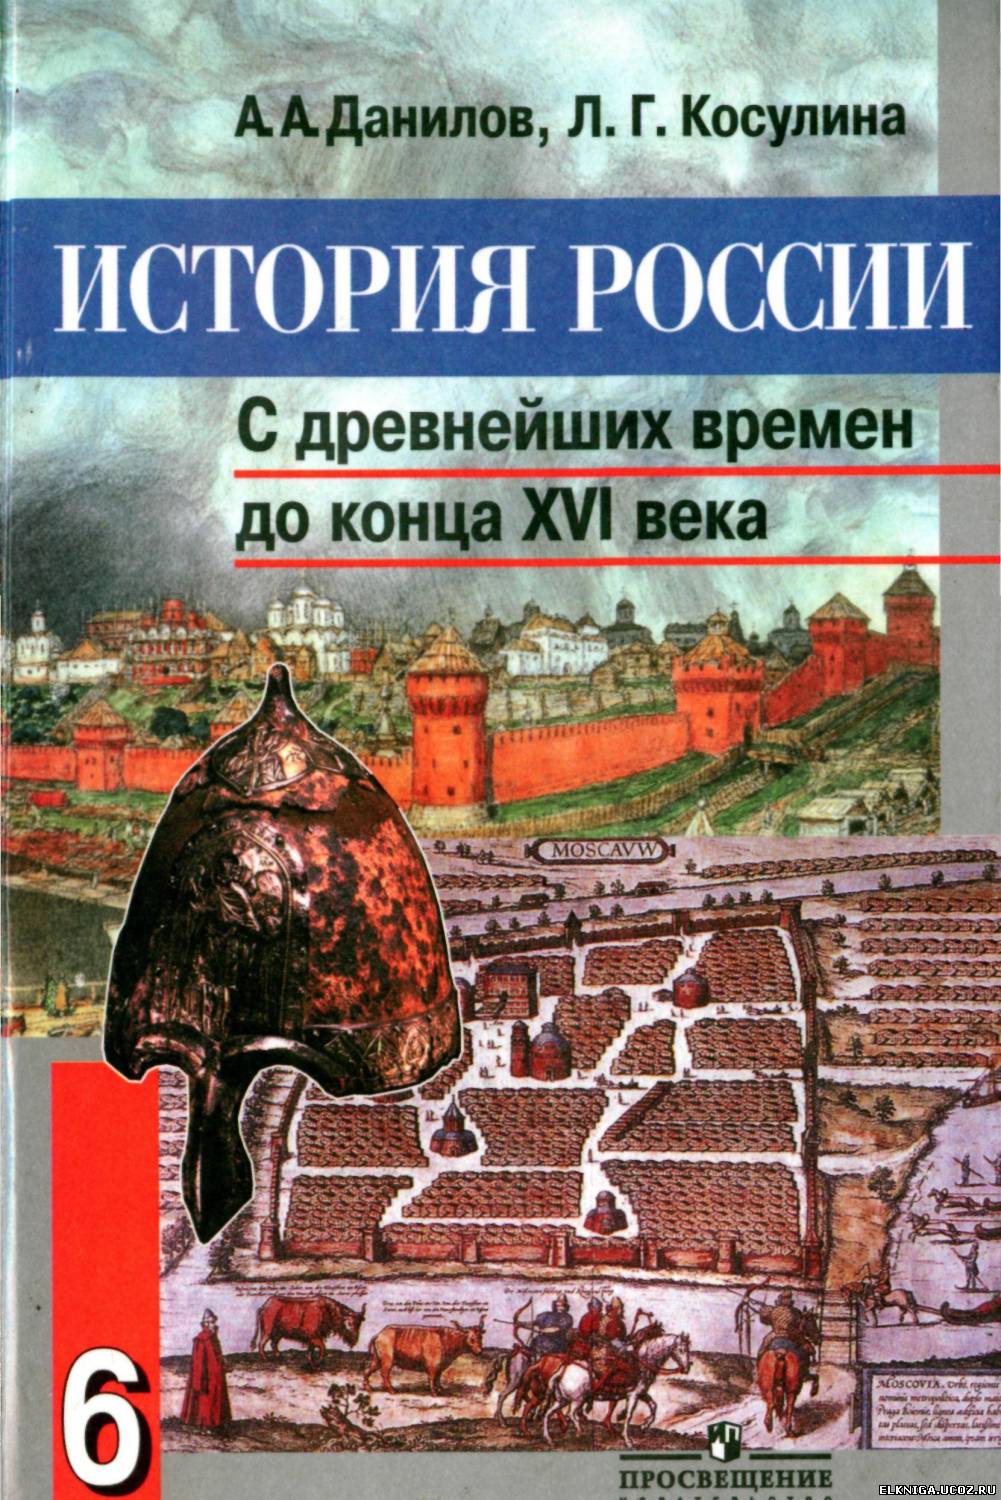 Скачать историю россии книгу